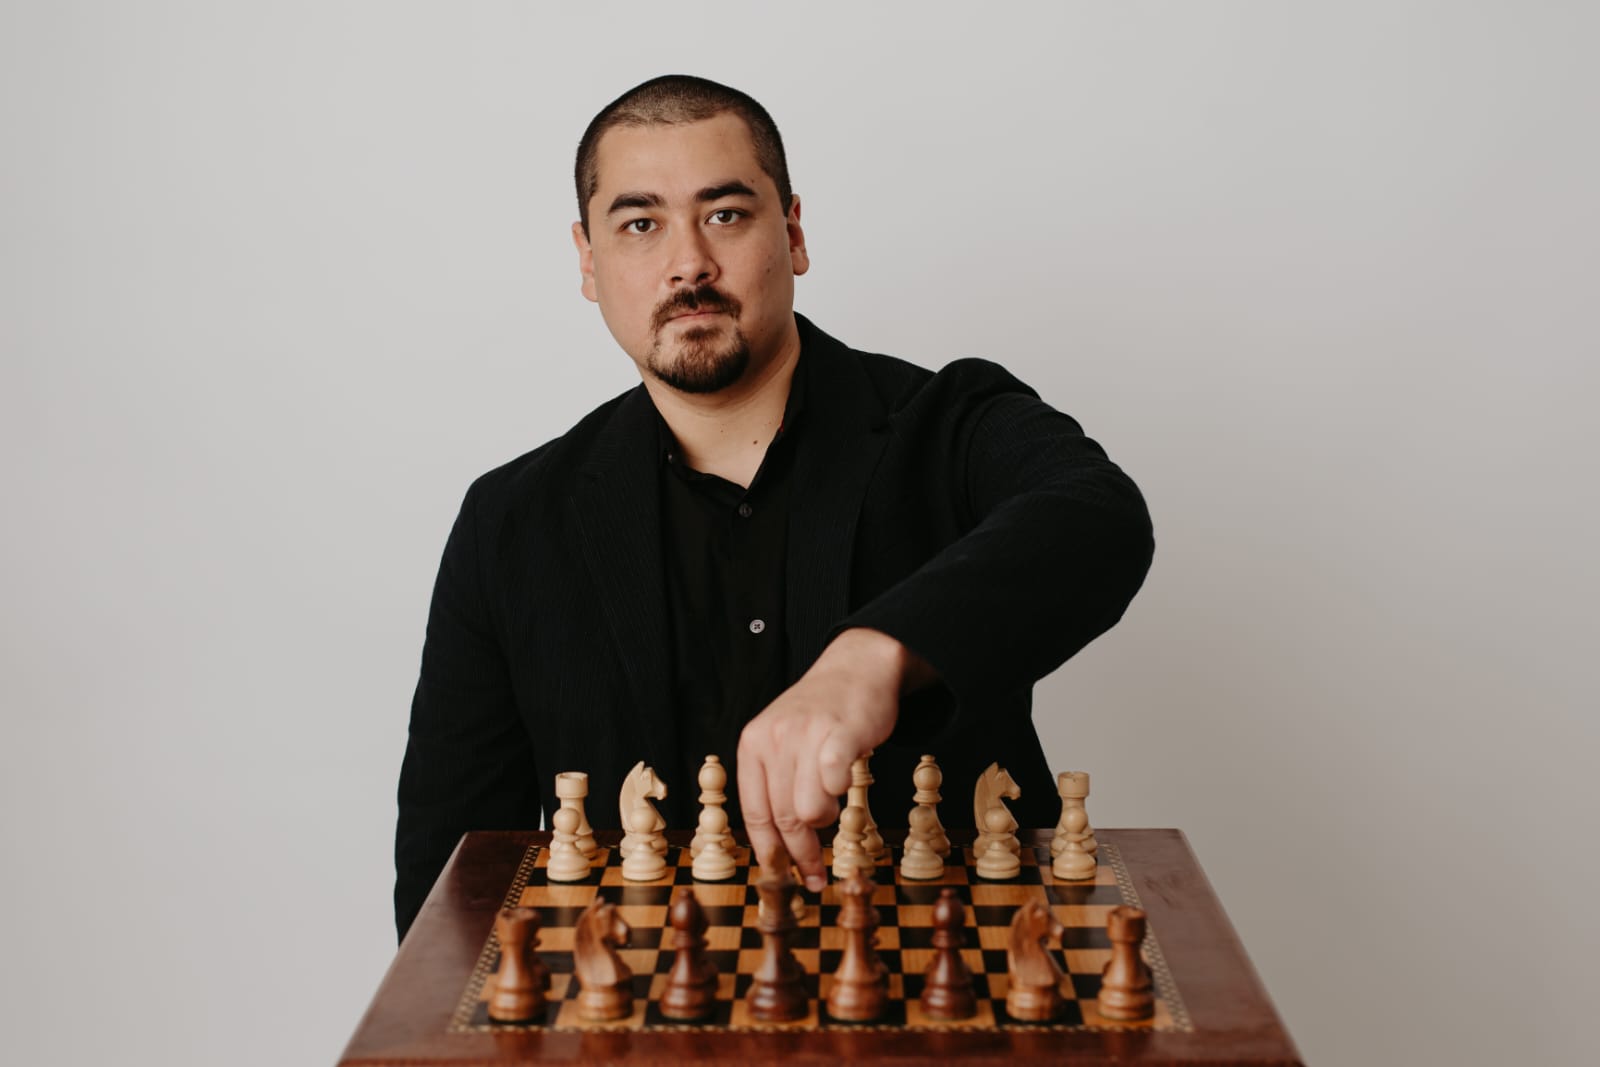 Enxadrista do AC é mestre de xadrez em Campeonato Brasileiro; campeão  acreano definido, ac